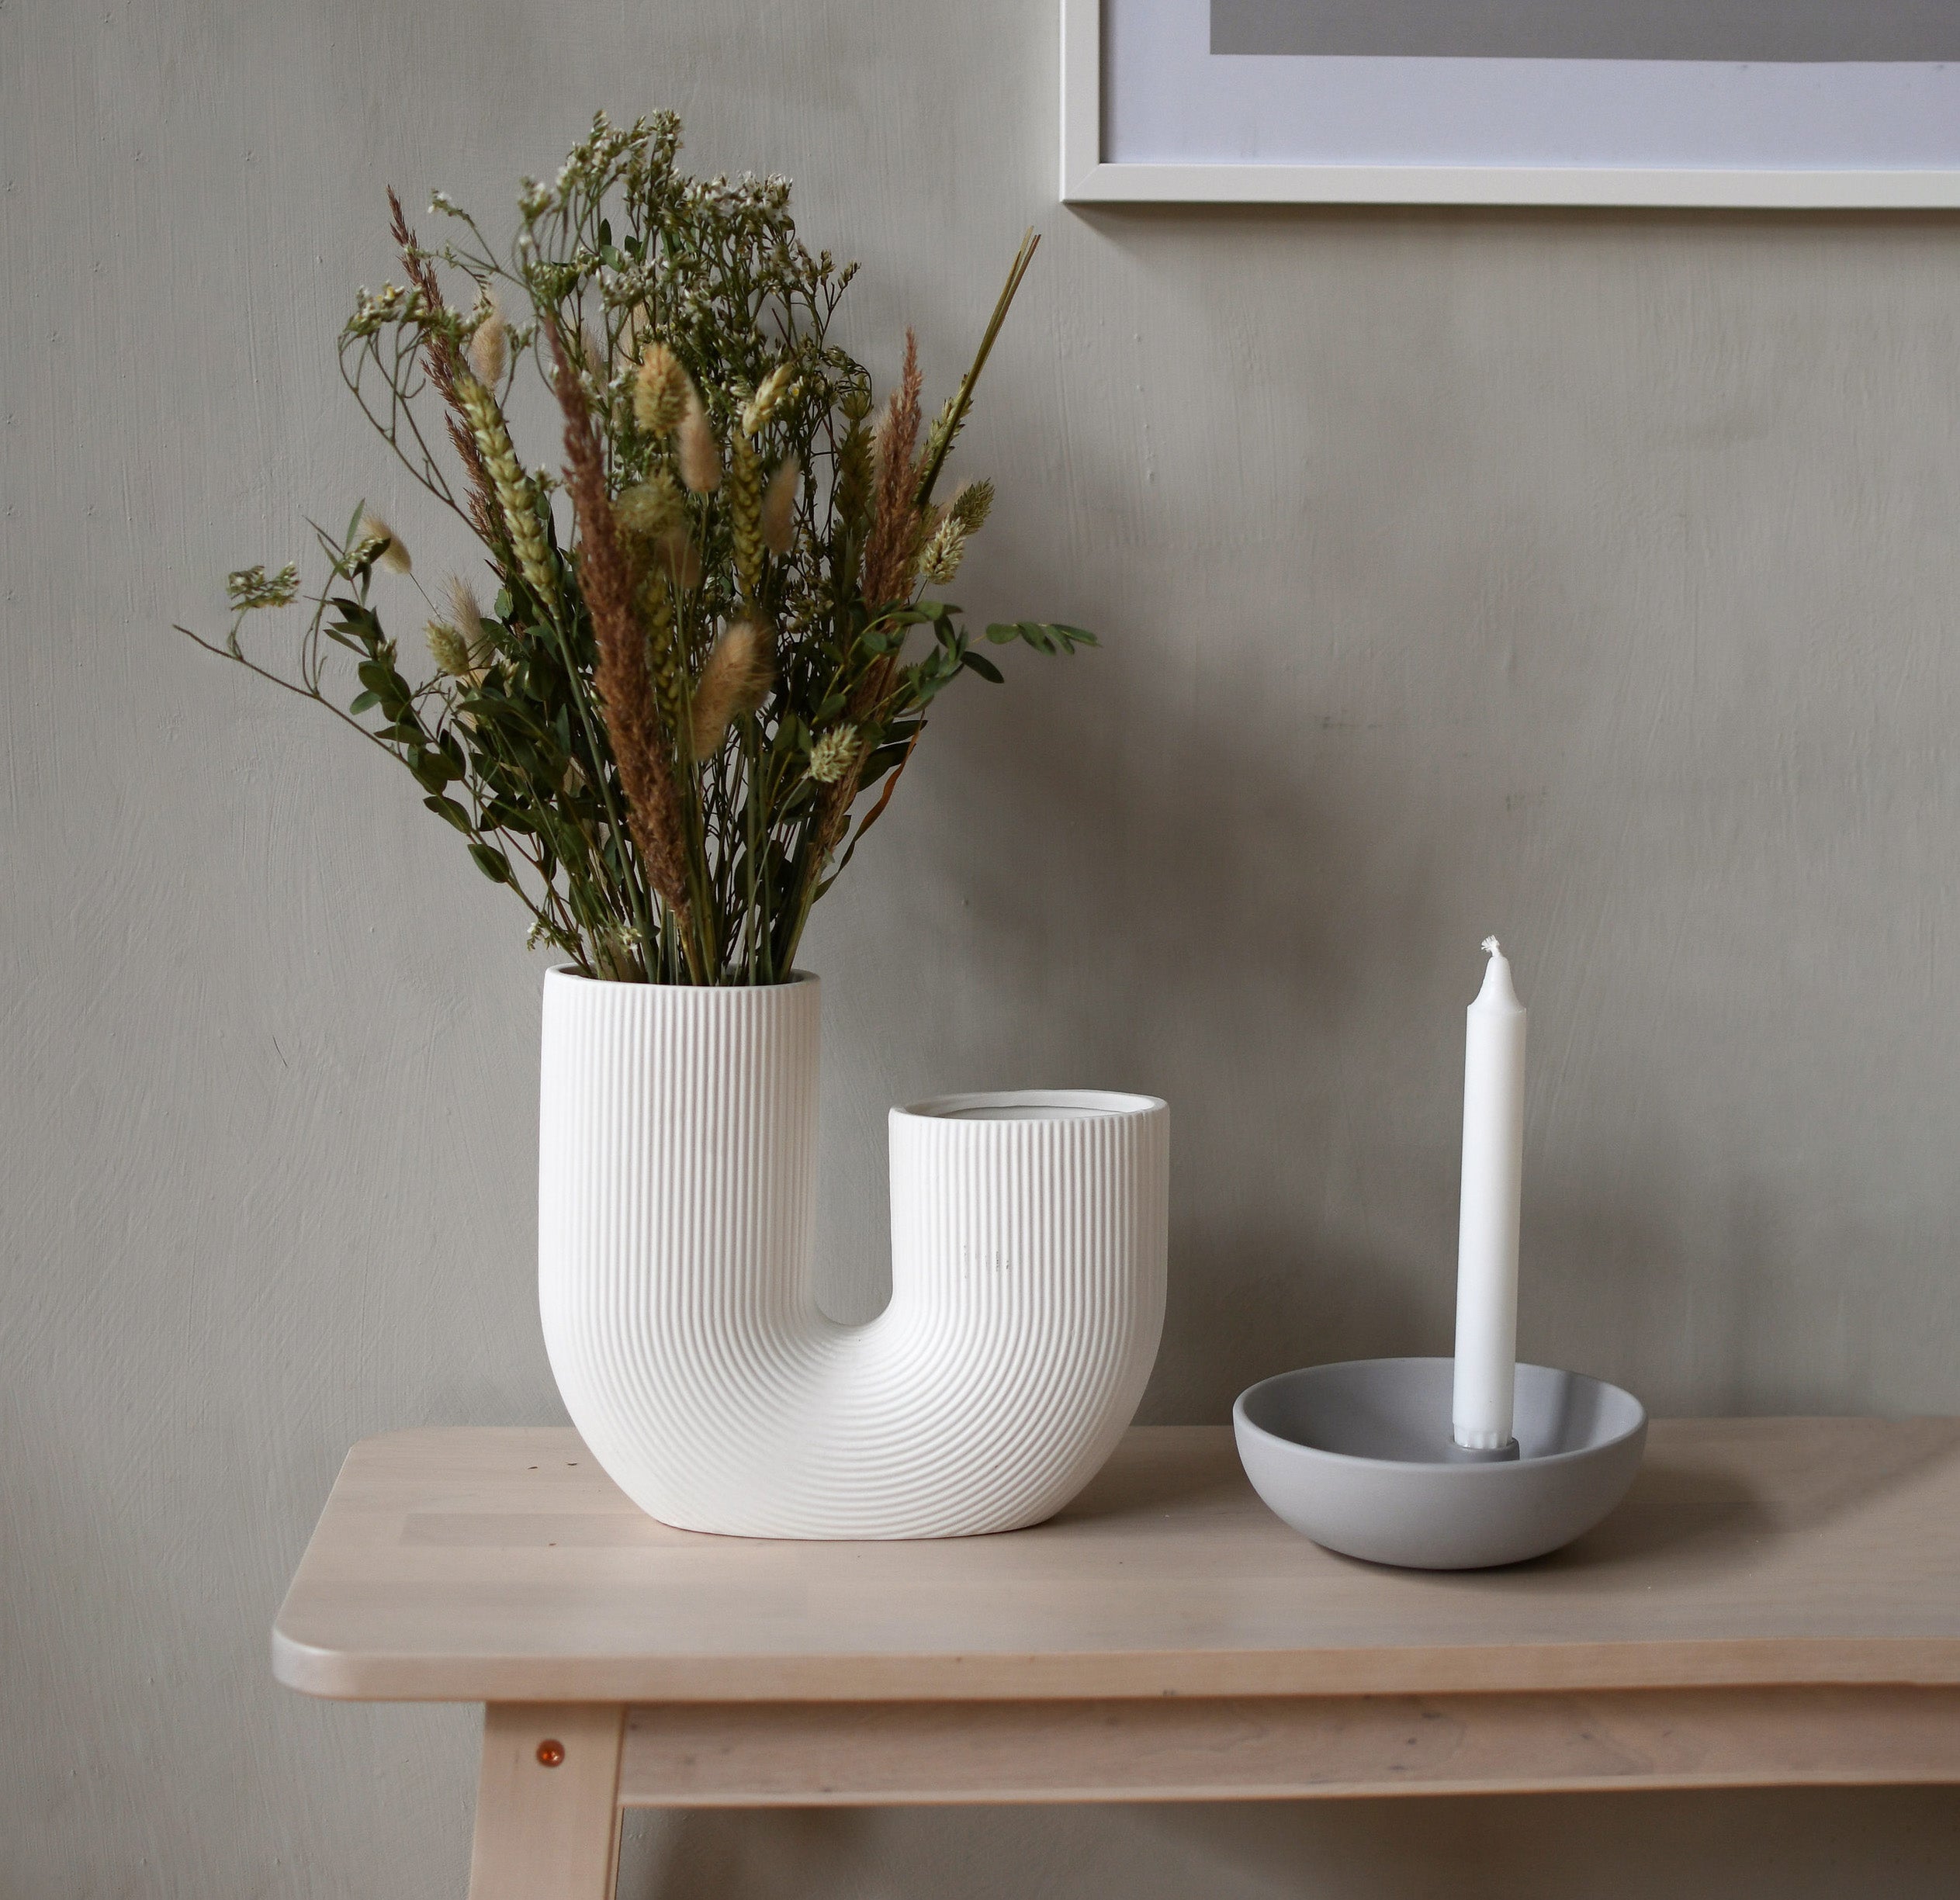 Die Vase Stravalla von der schwedischen Marke Storefactory ist eine elegante und zeitlose Keramikvase.